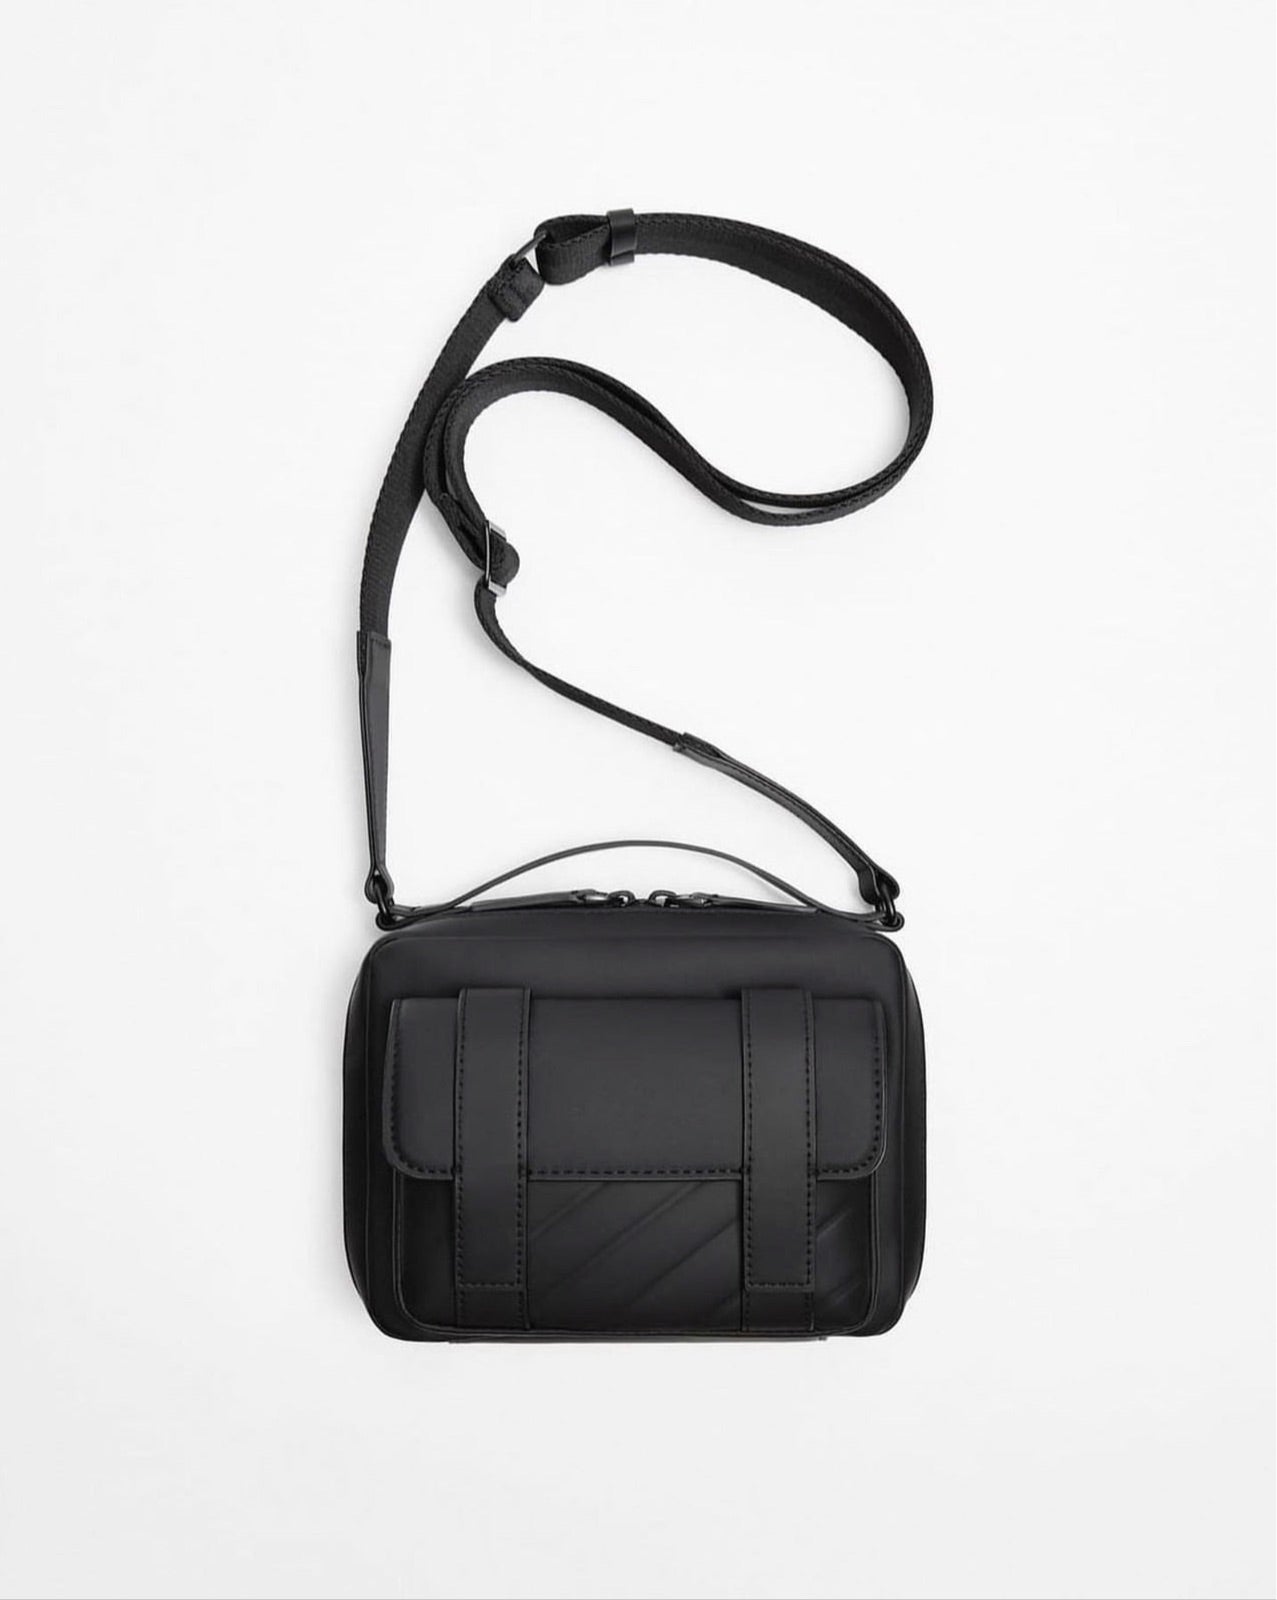 Zara monochrome leather side bag pop